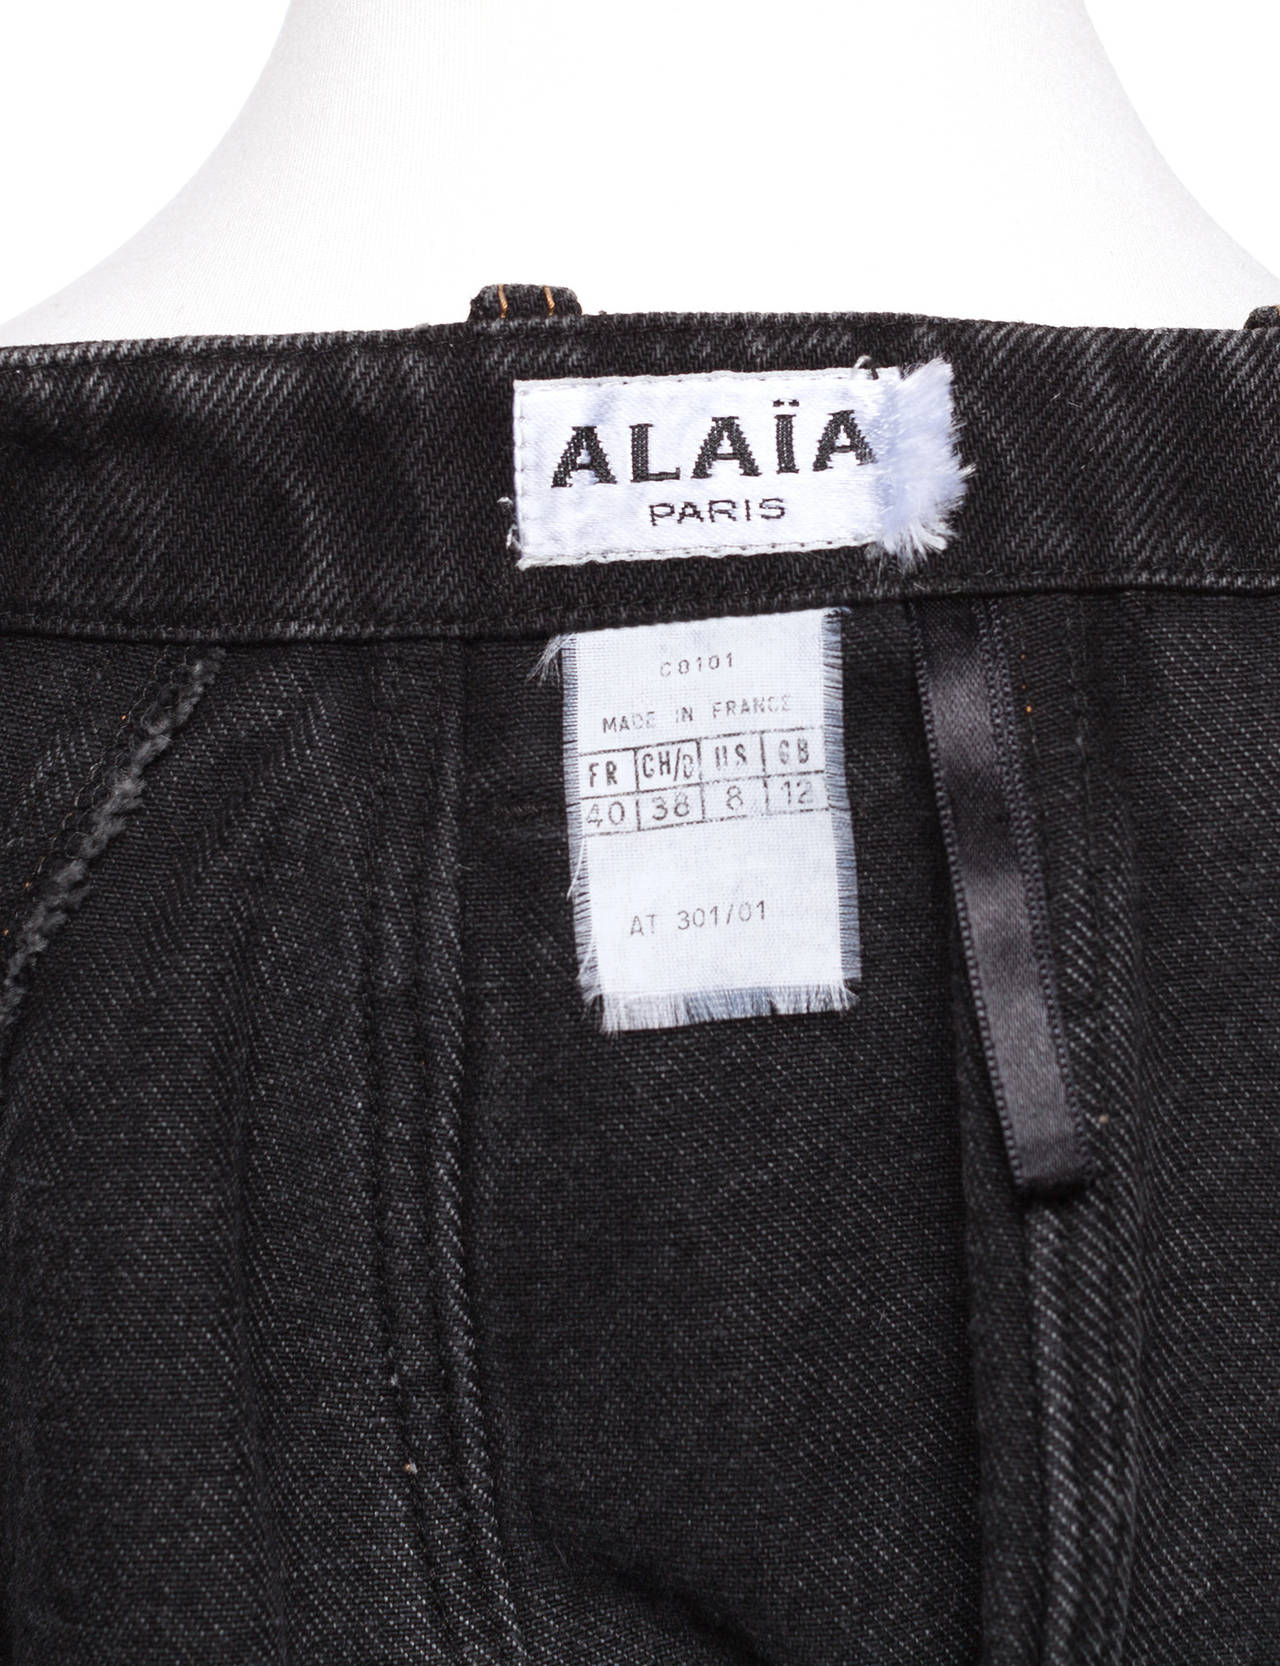 Azzendine Alaia black denim skirt with bondage laces 1990's 2